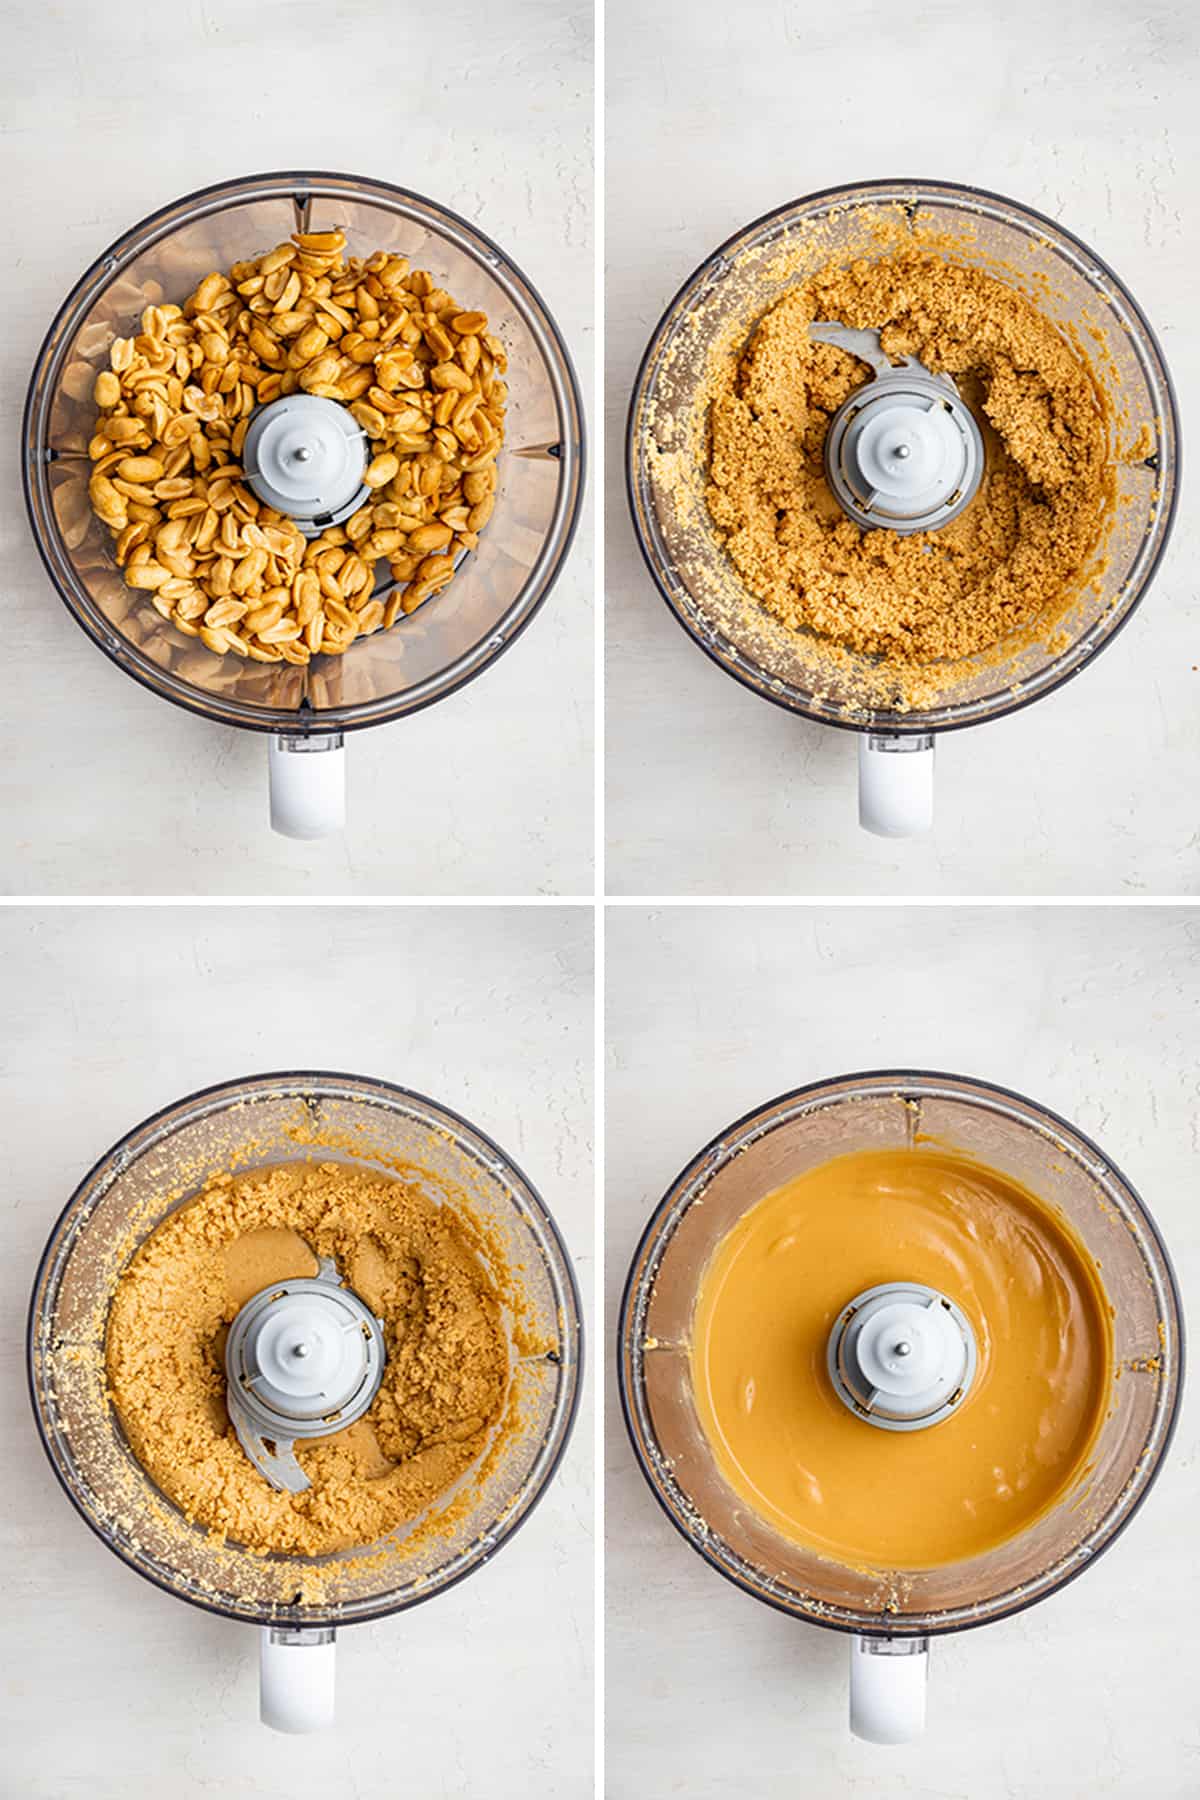 Um processador de alimentos cheio de amendoim torrado com mel em quatro estágios de mistura diferentes: sem mistura, mistura grossa, suave, mas com alguns pedaços e cremoso